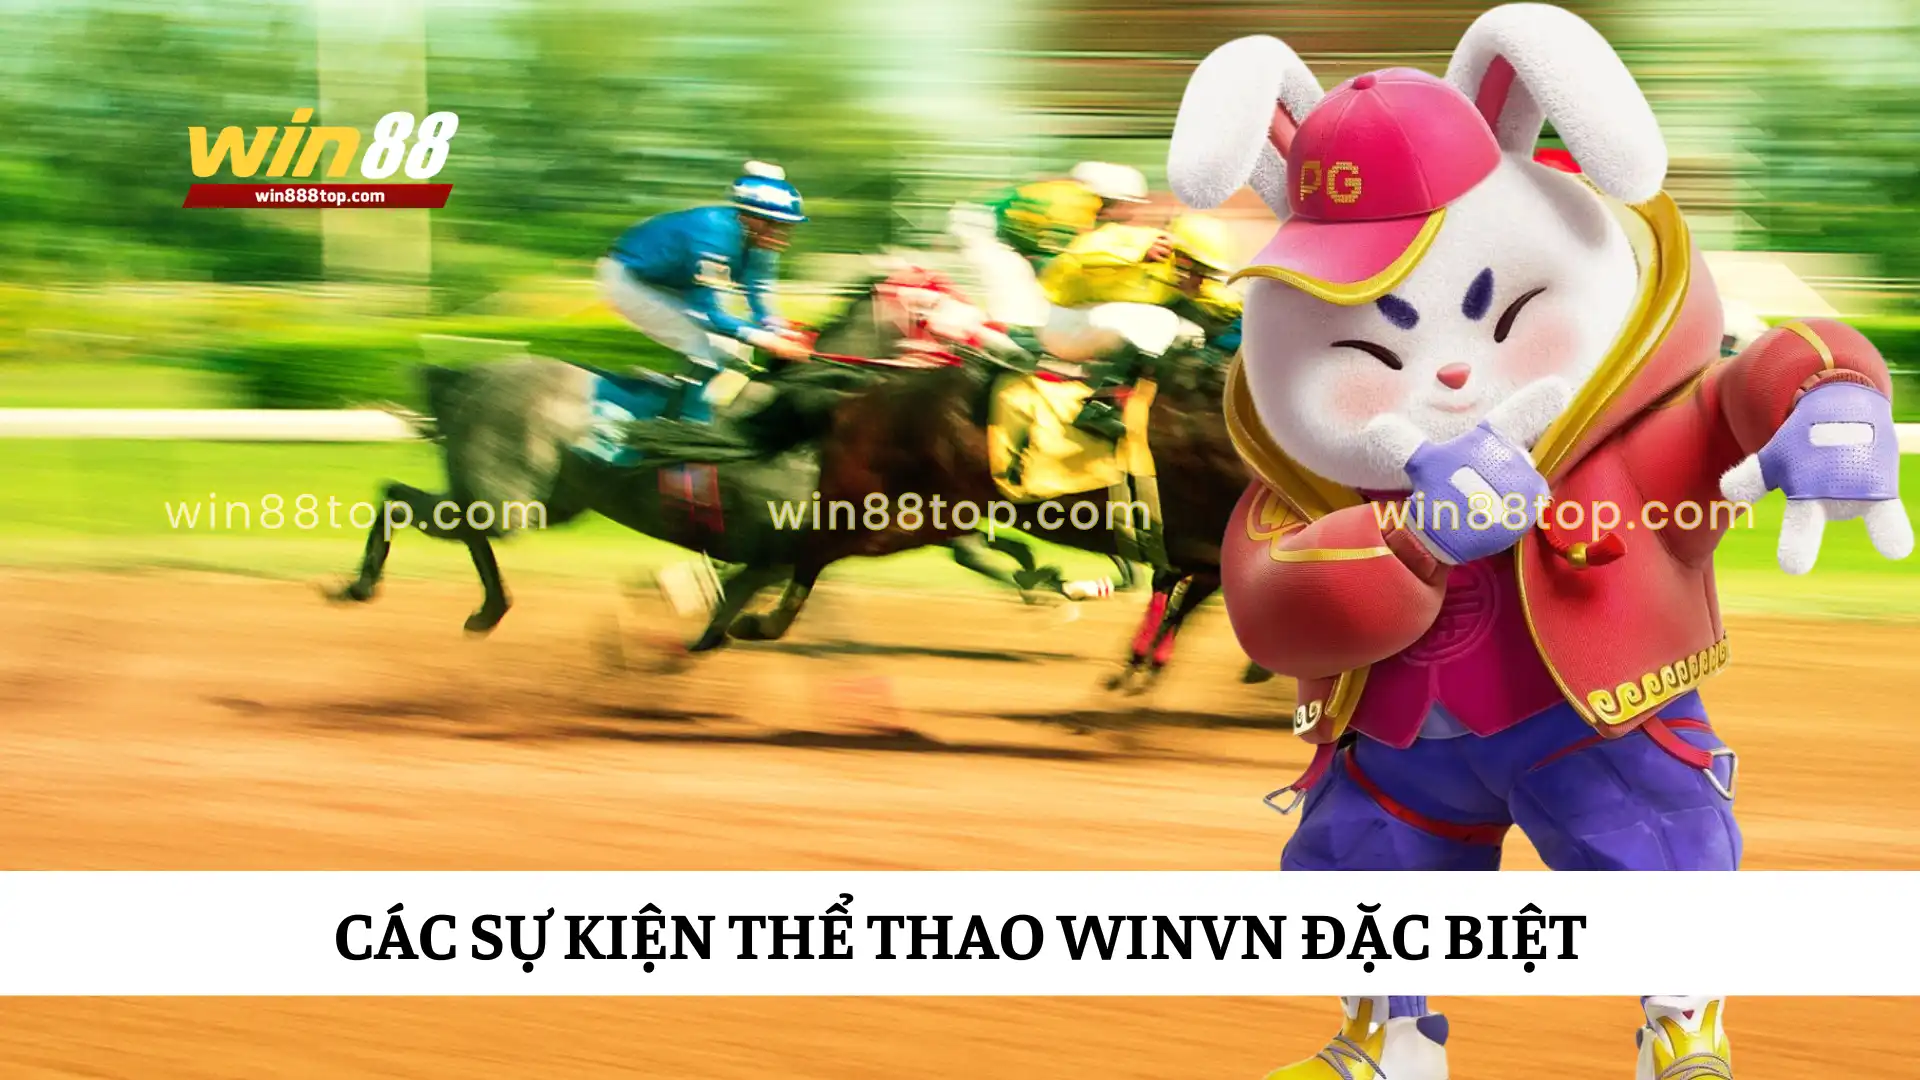 cac-su-kien-the-thao-winvn-dac-biet